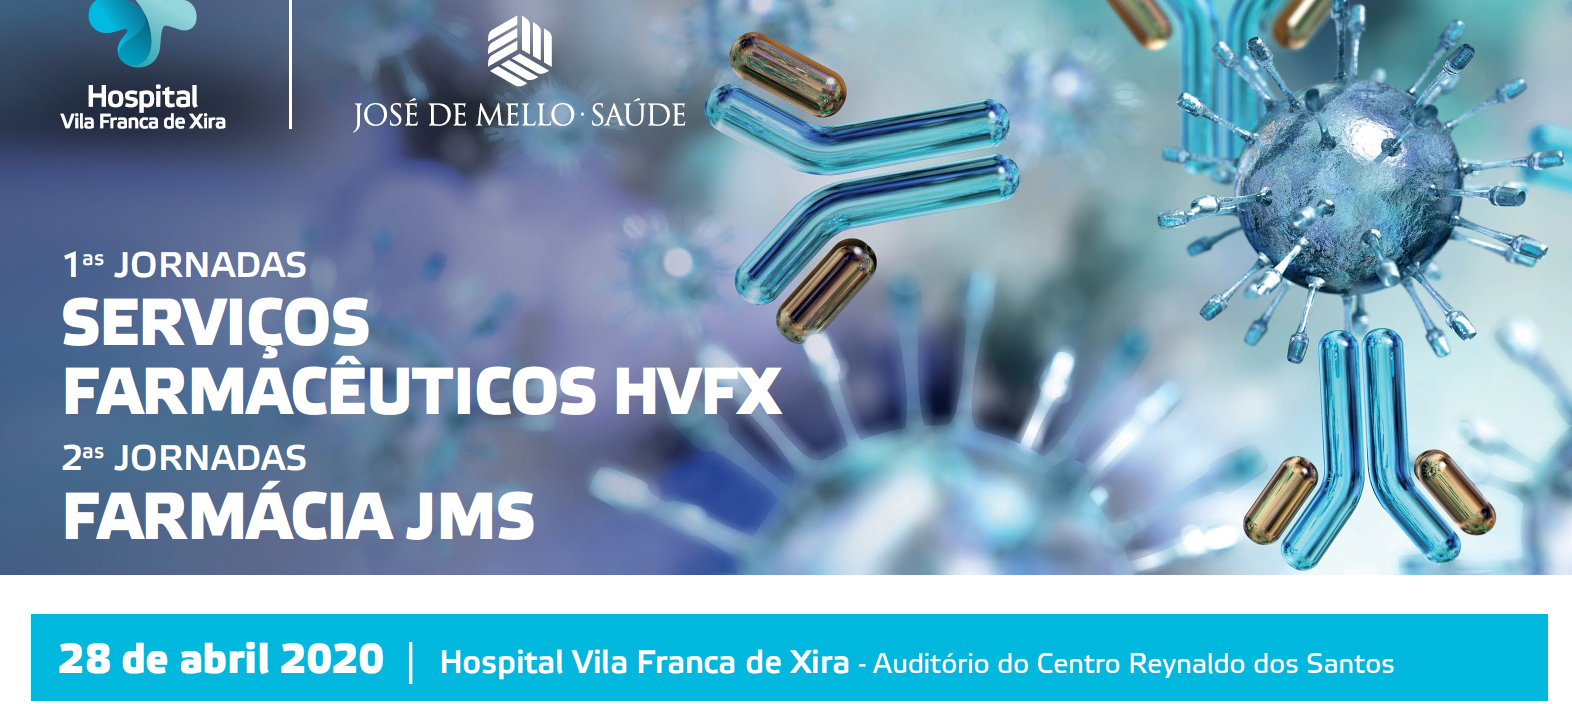 hospital-de-vila-franca-de-xira-1as Jornadas dos Serviços Farmacêuticos HVFX e 2as Jornadas Farmácia JMS